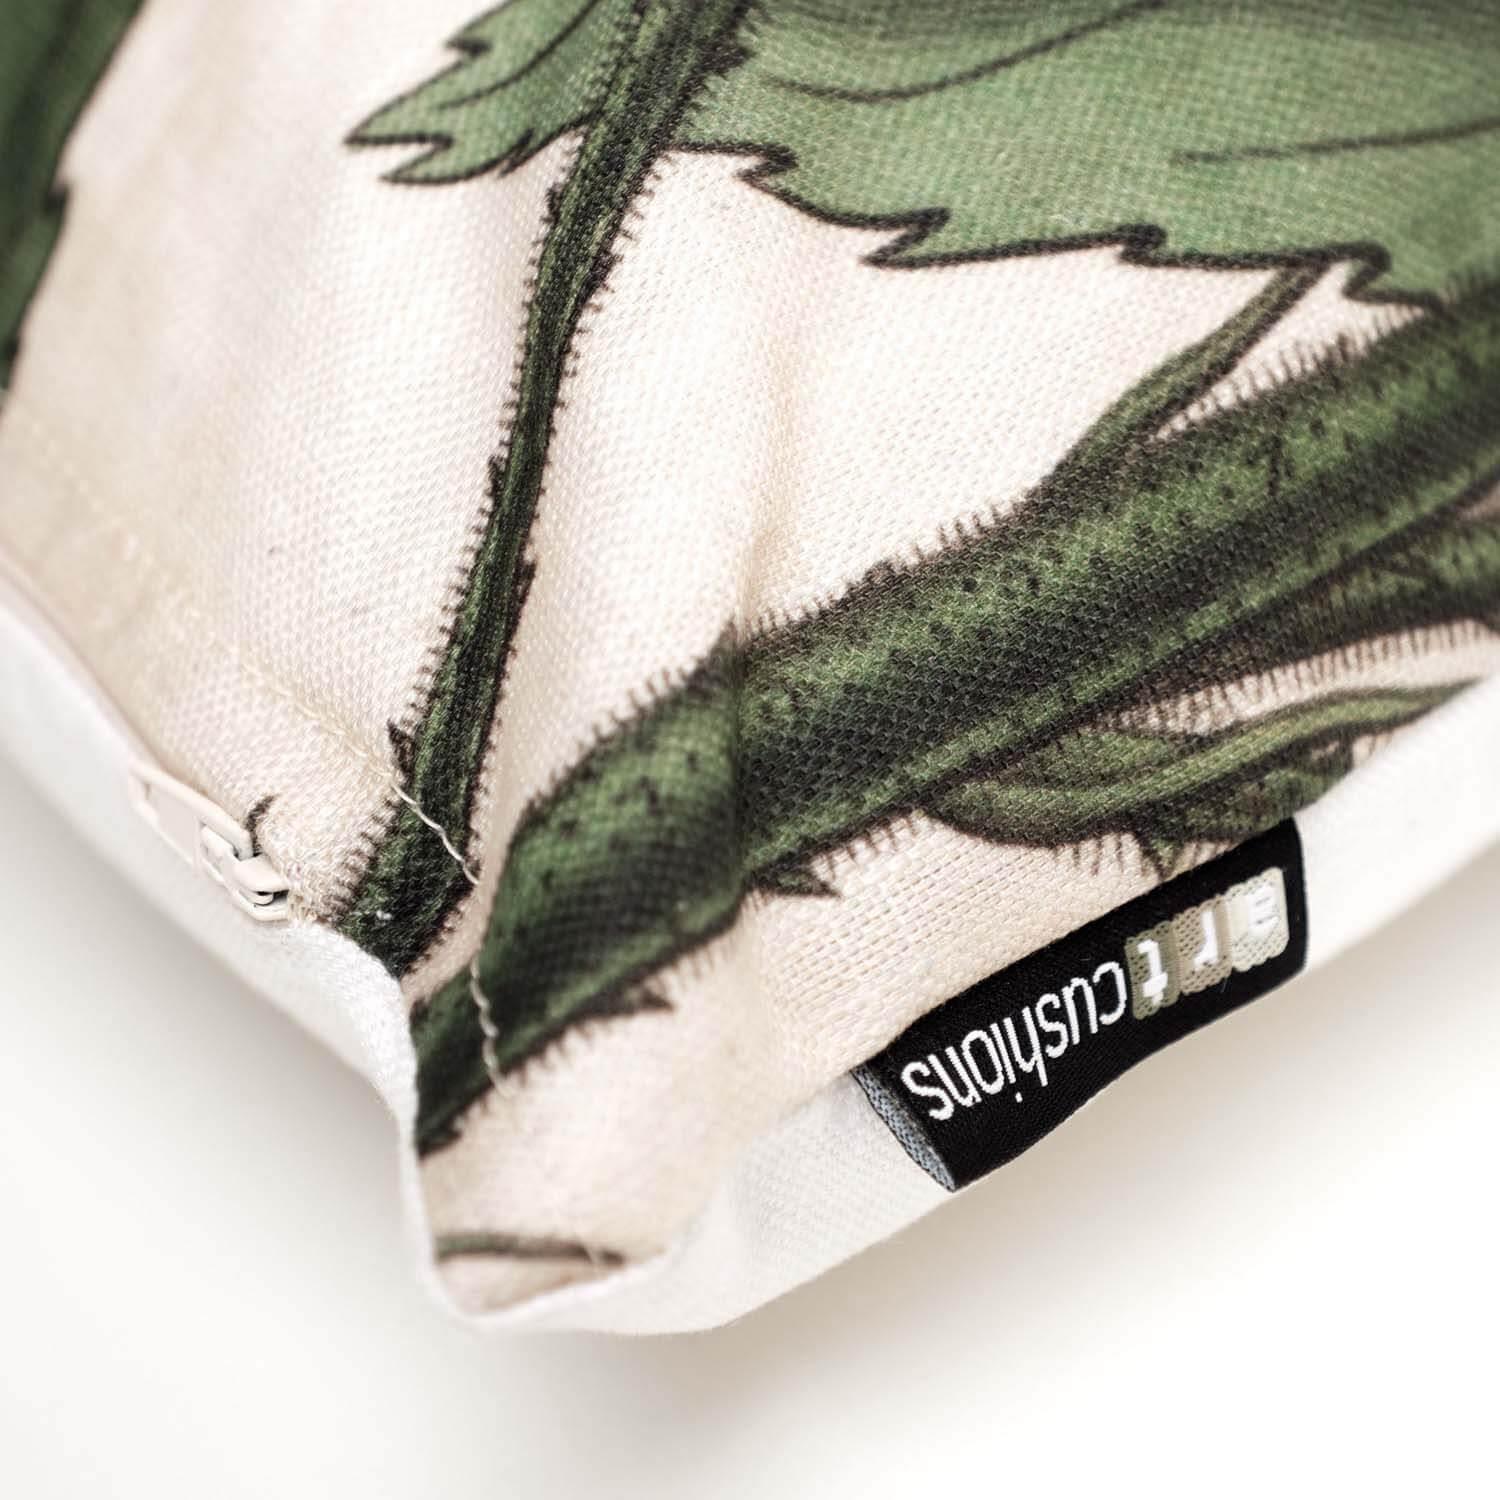 Savanna - Botanical Cushion - Handmade Cushions UK - WeLoveCushions